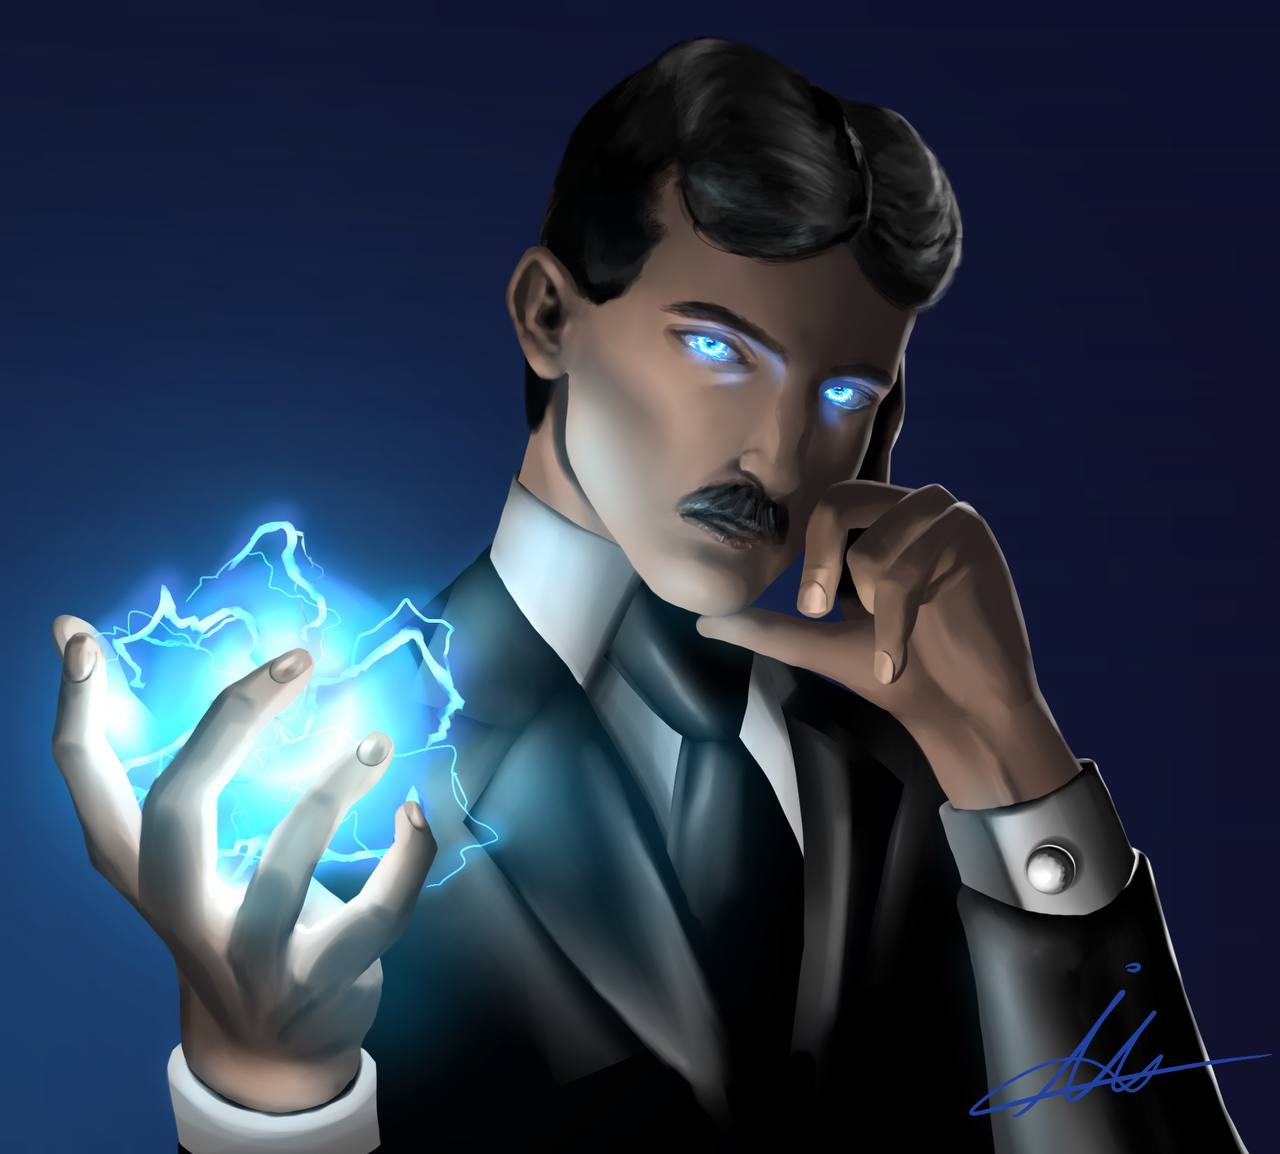 Nikola Tesla by kraspencil on DeviantArt